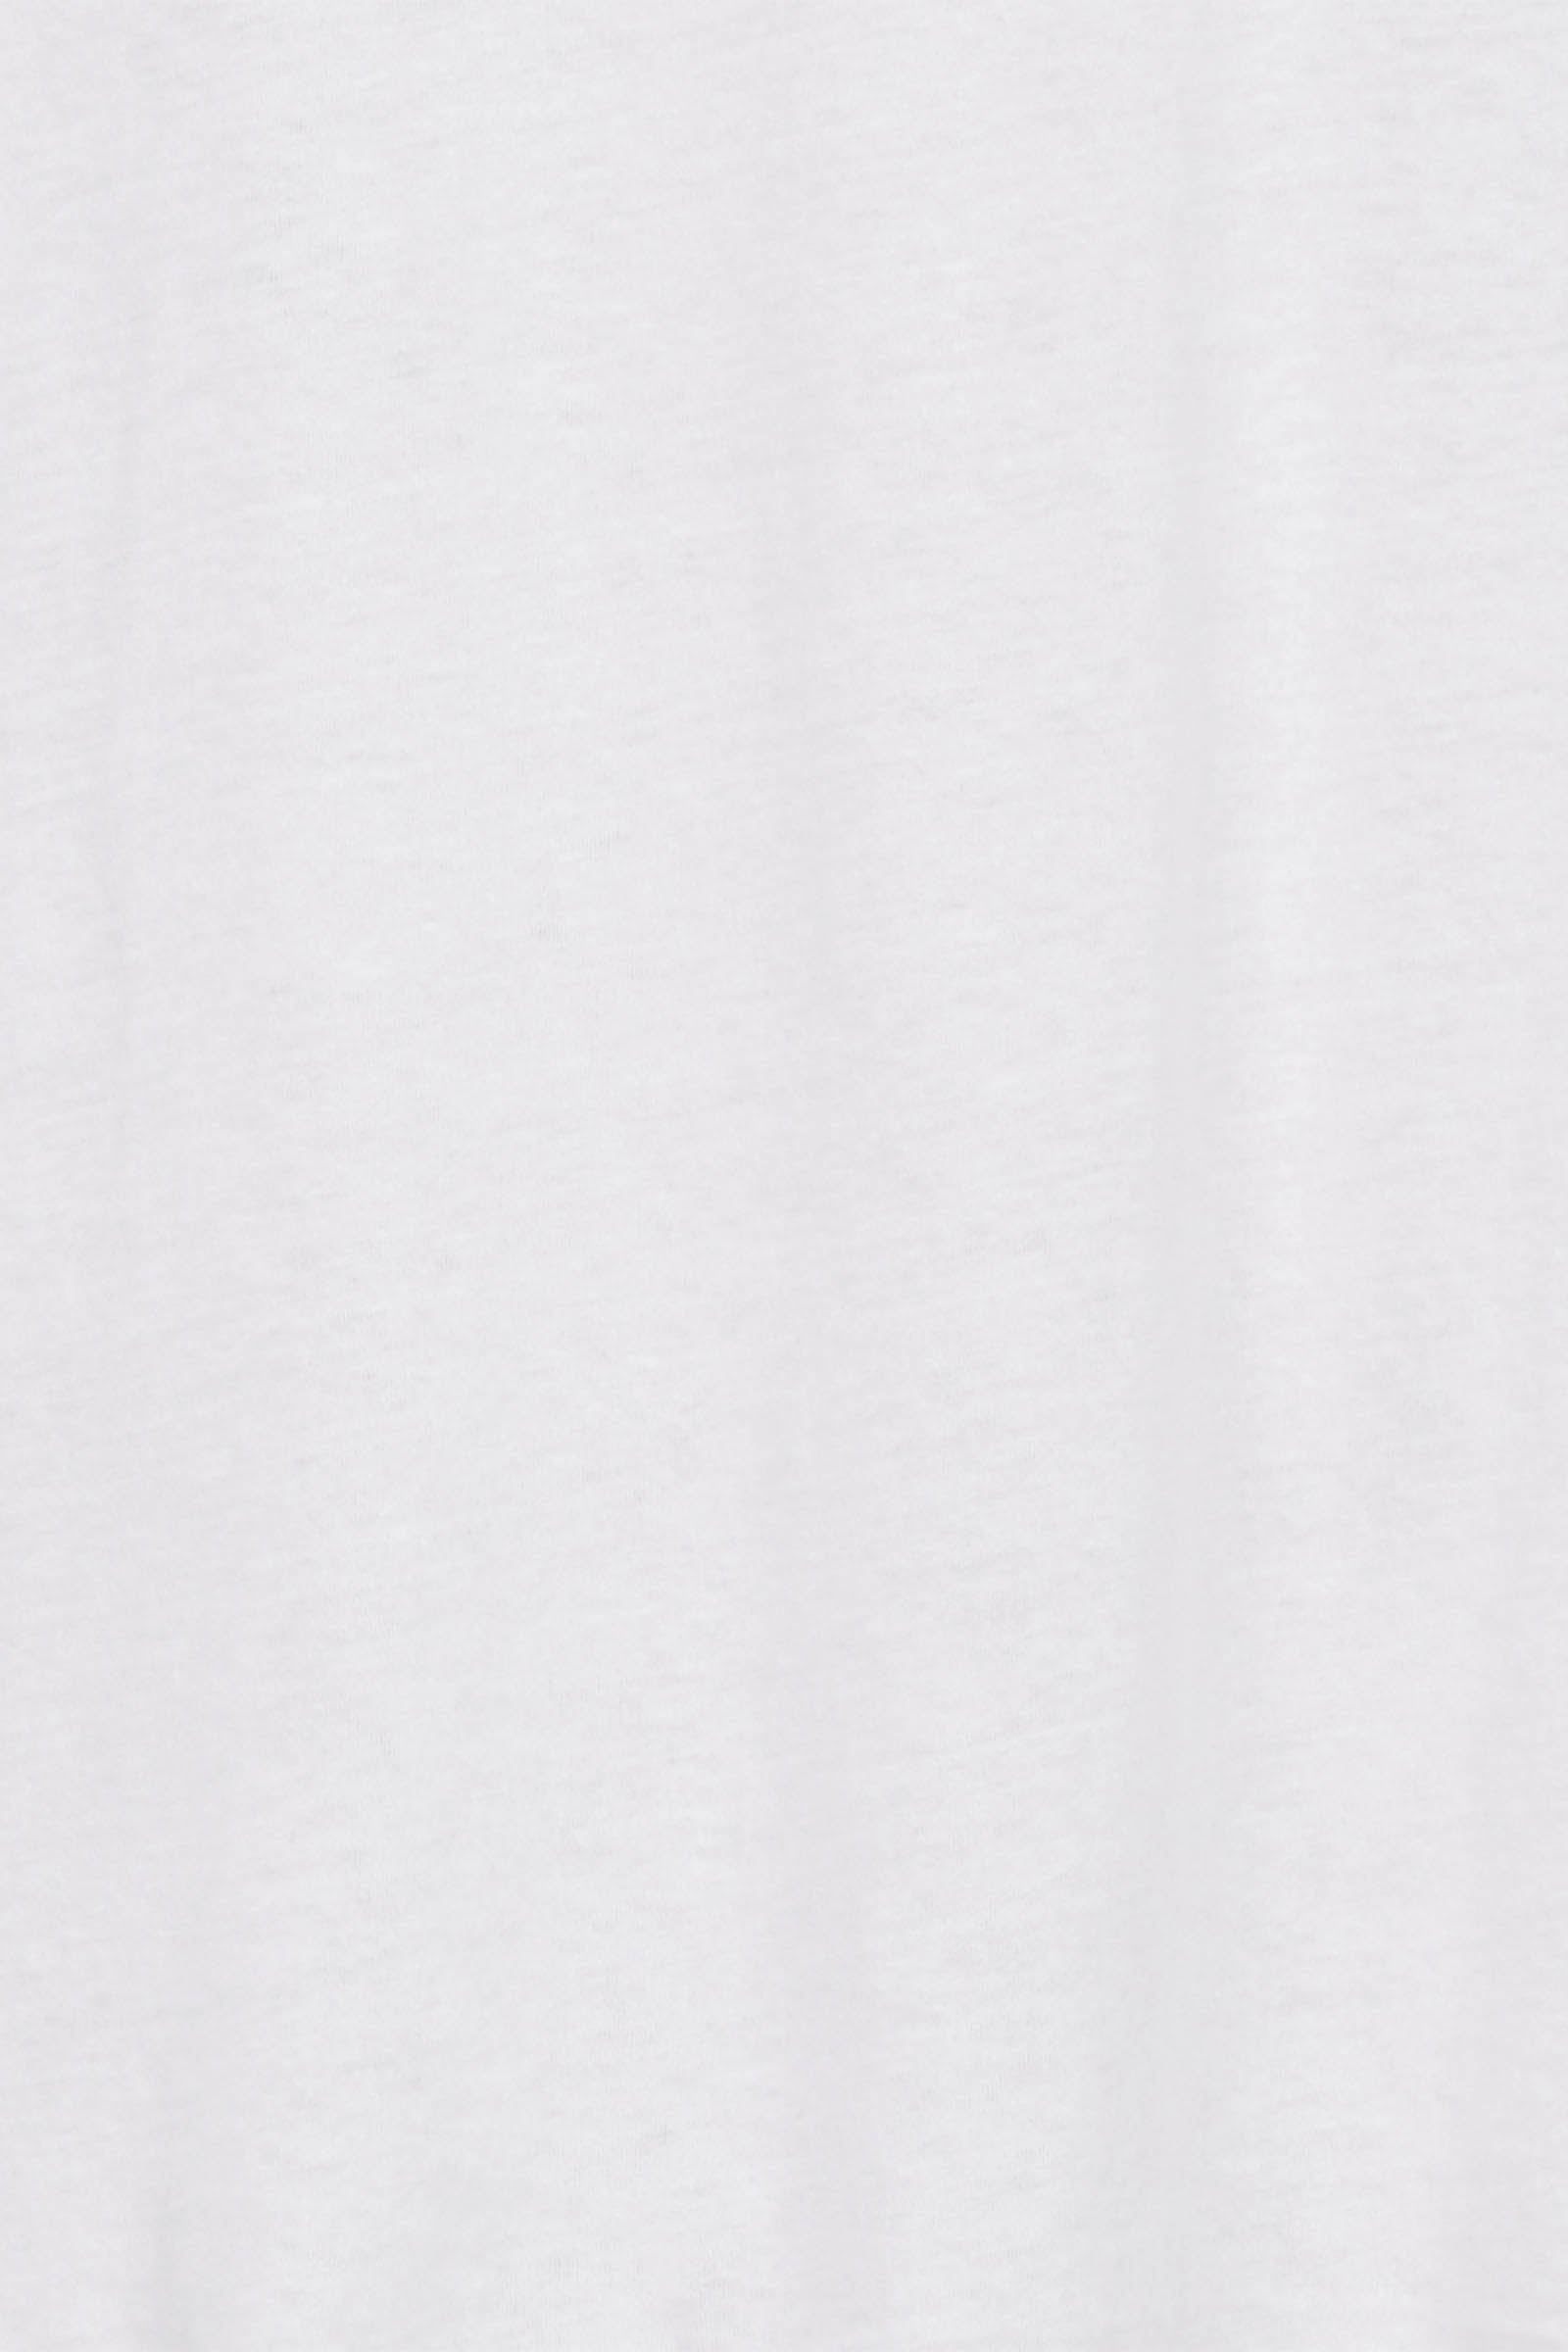 Reveler Tshirt - Blanc - eb&ive Clothing - Top Tshirt S/S